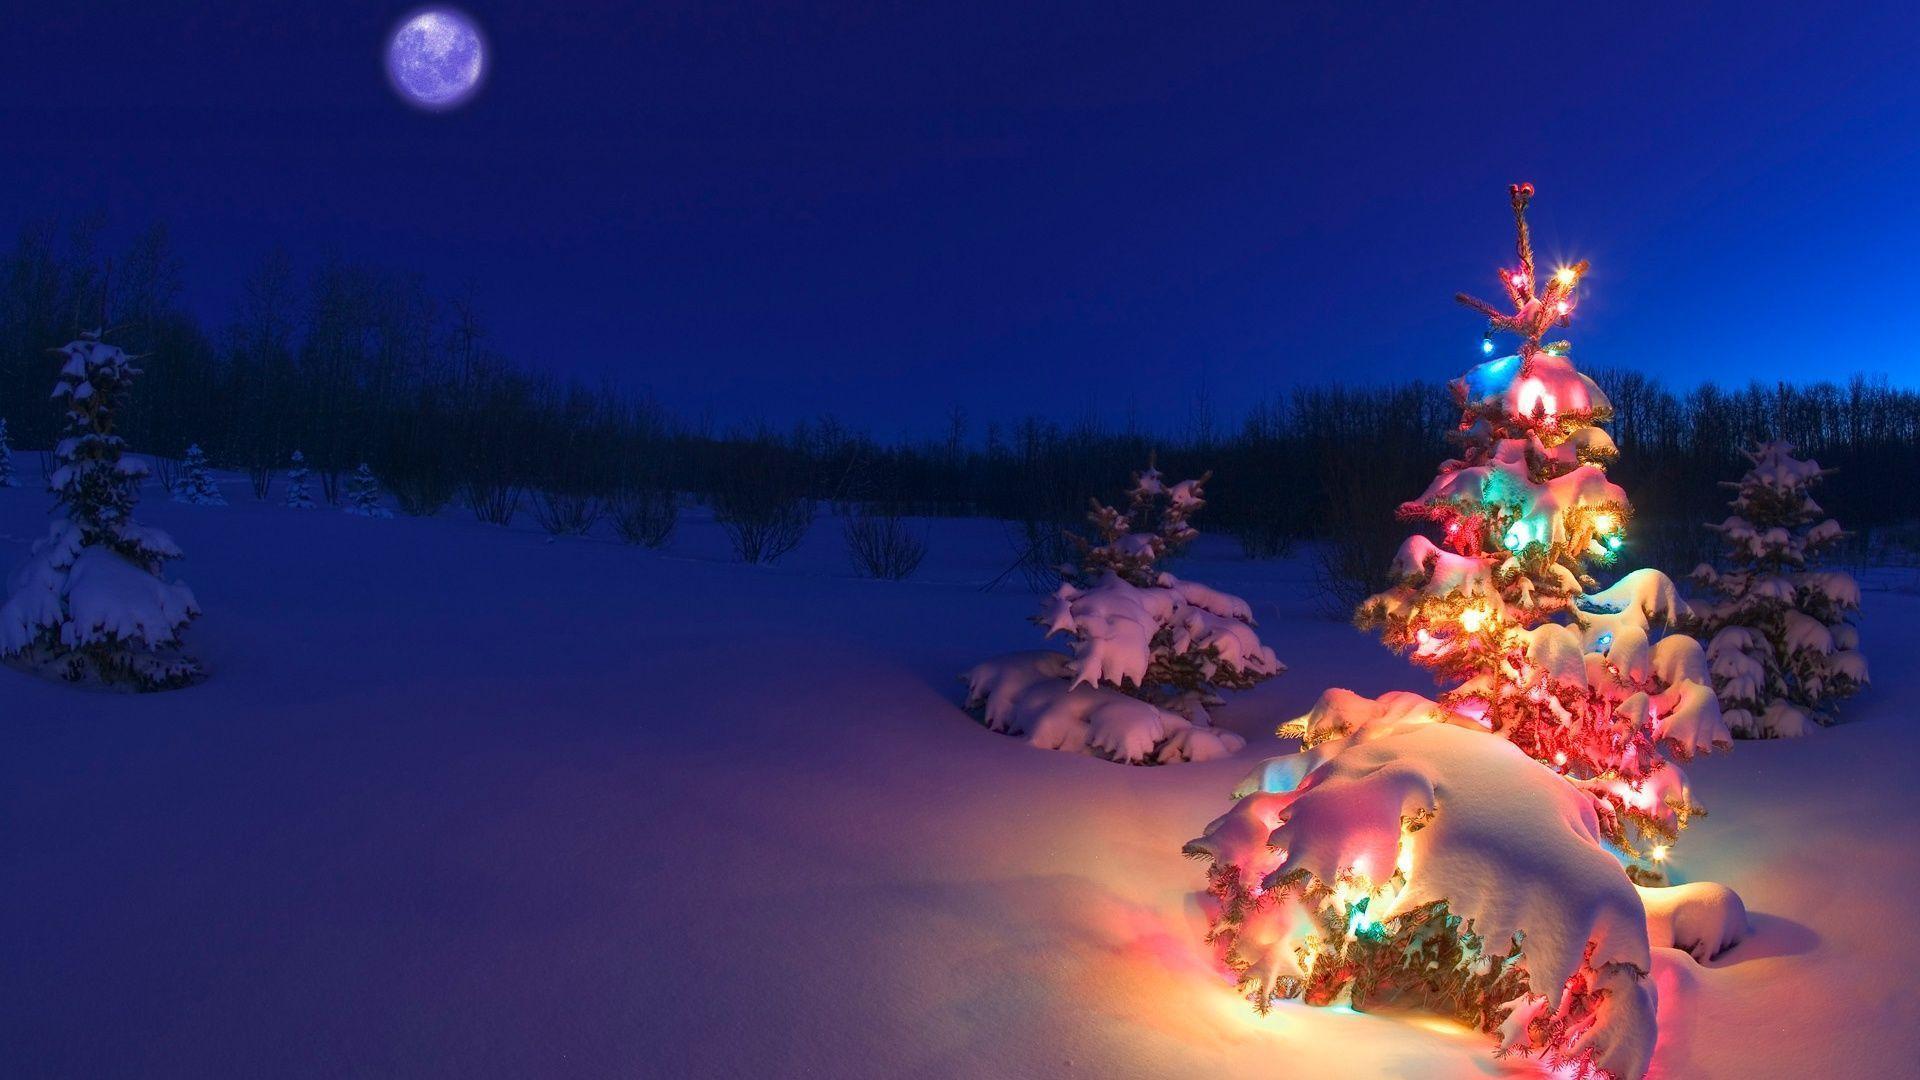 Winter Christmas HD Wallpaper 1080p. High Definition Wallpaper